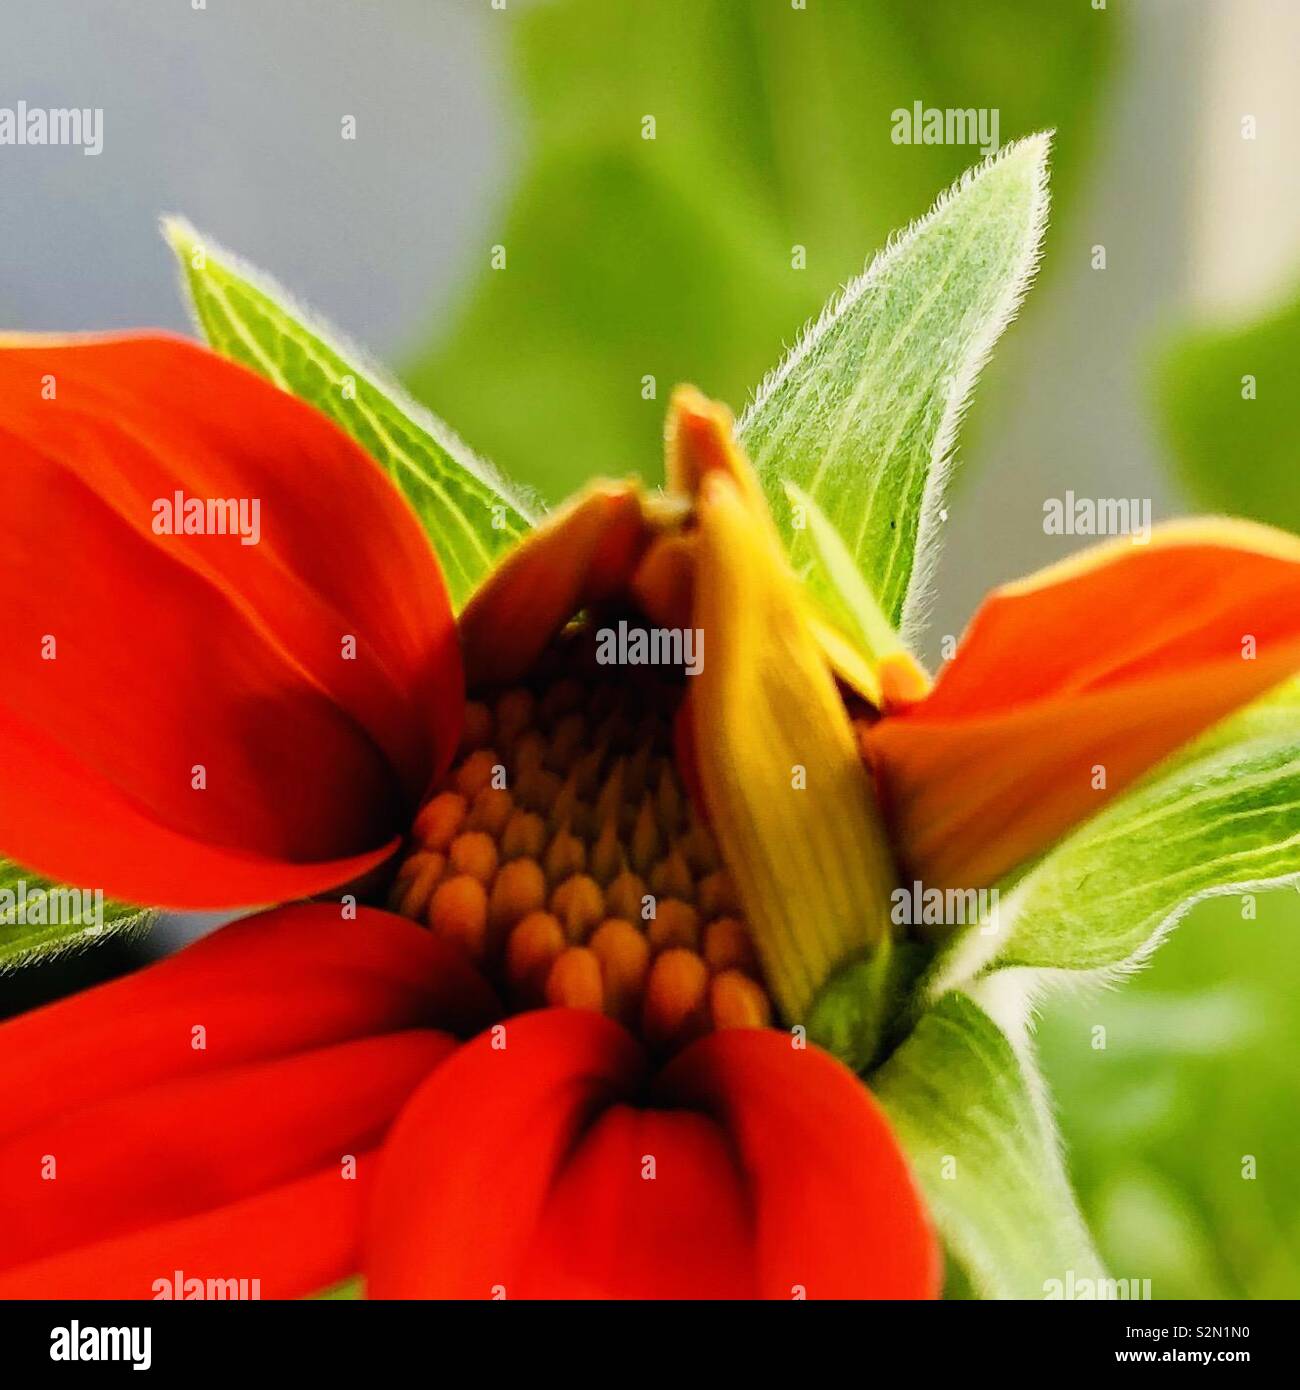 Torcia rosso fiori di girasole bud parzialmente aperta. Belle sfumature di arancione in fiore e illuminato, leggermente striato sepali di colore verde. Foto Stock